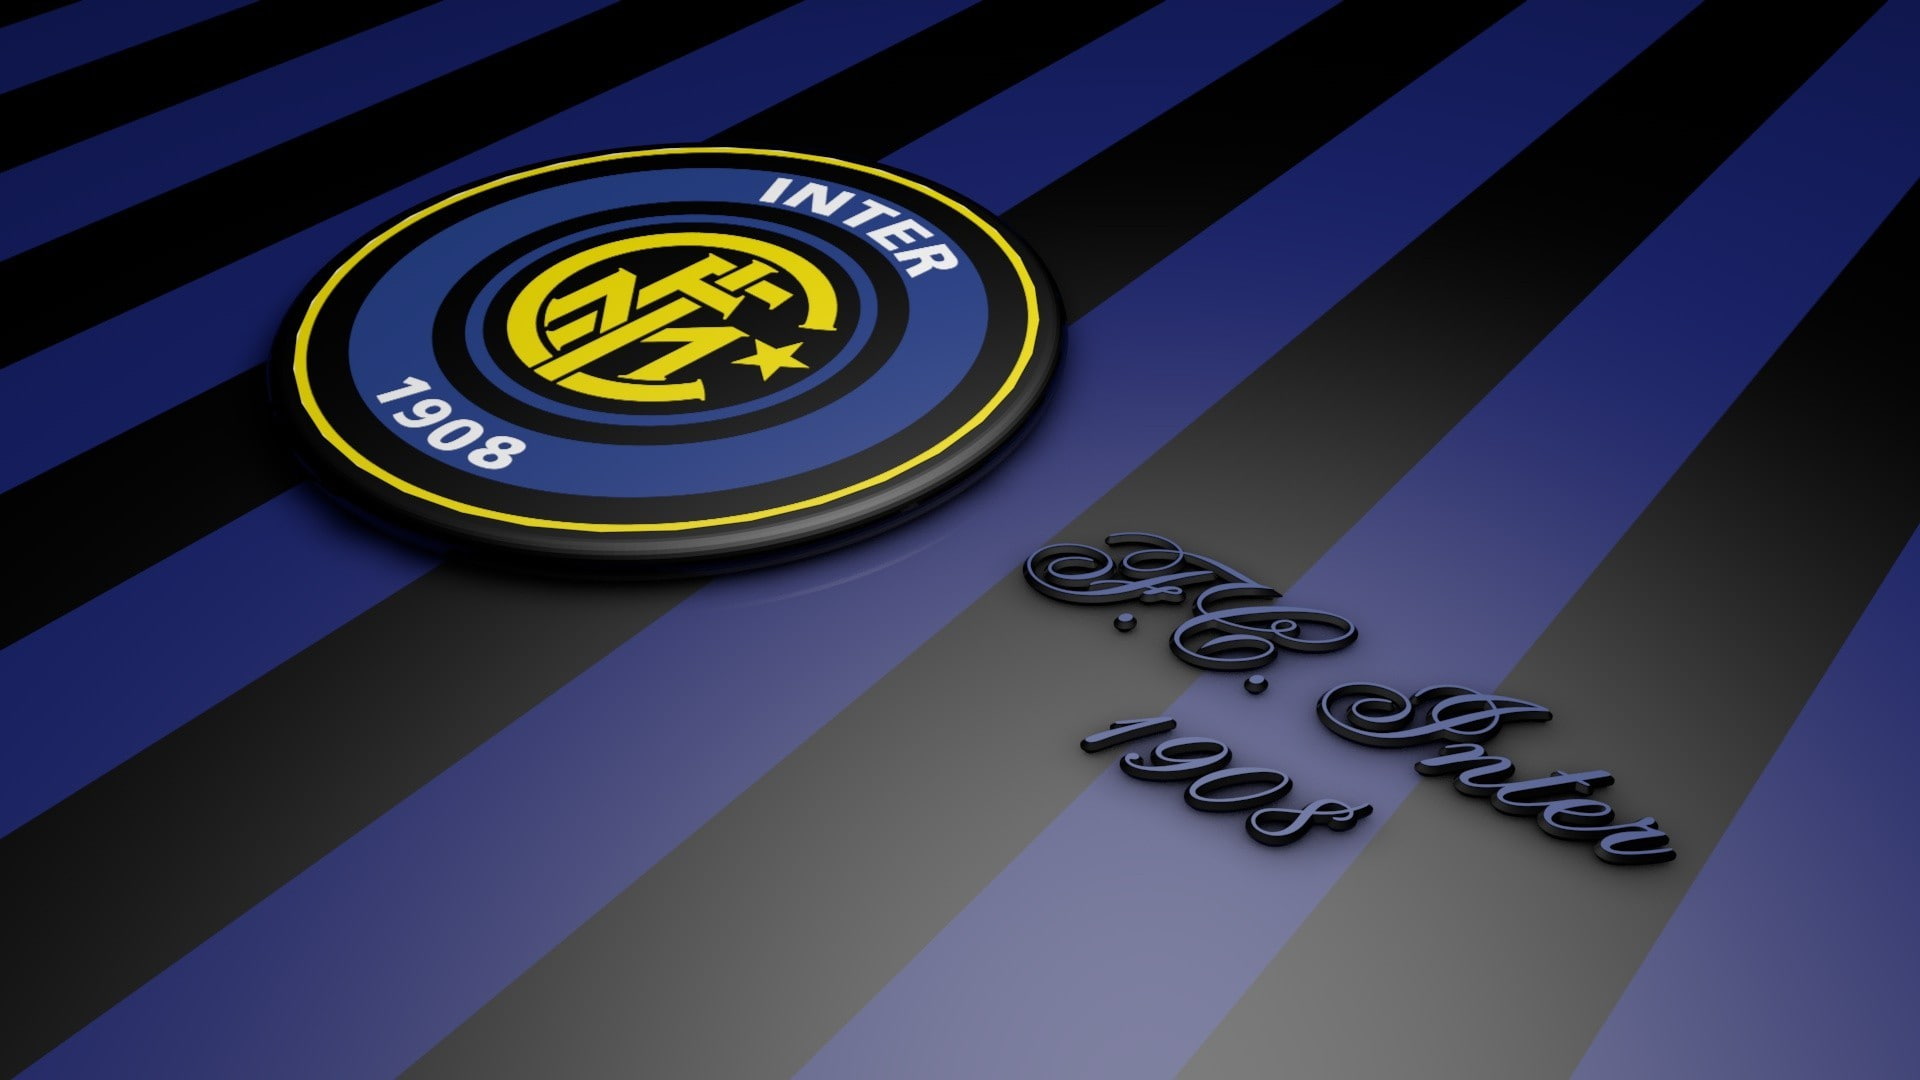 Inter Milan, Internazionale